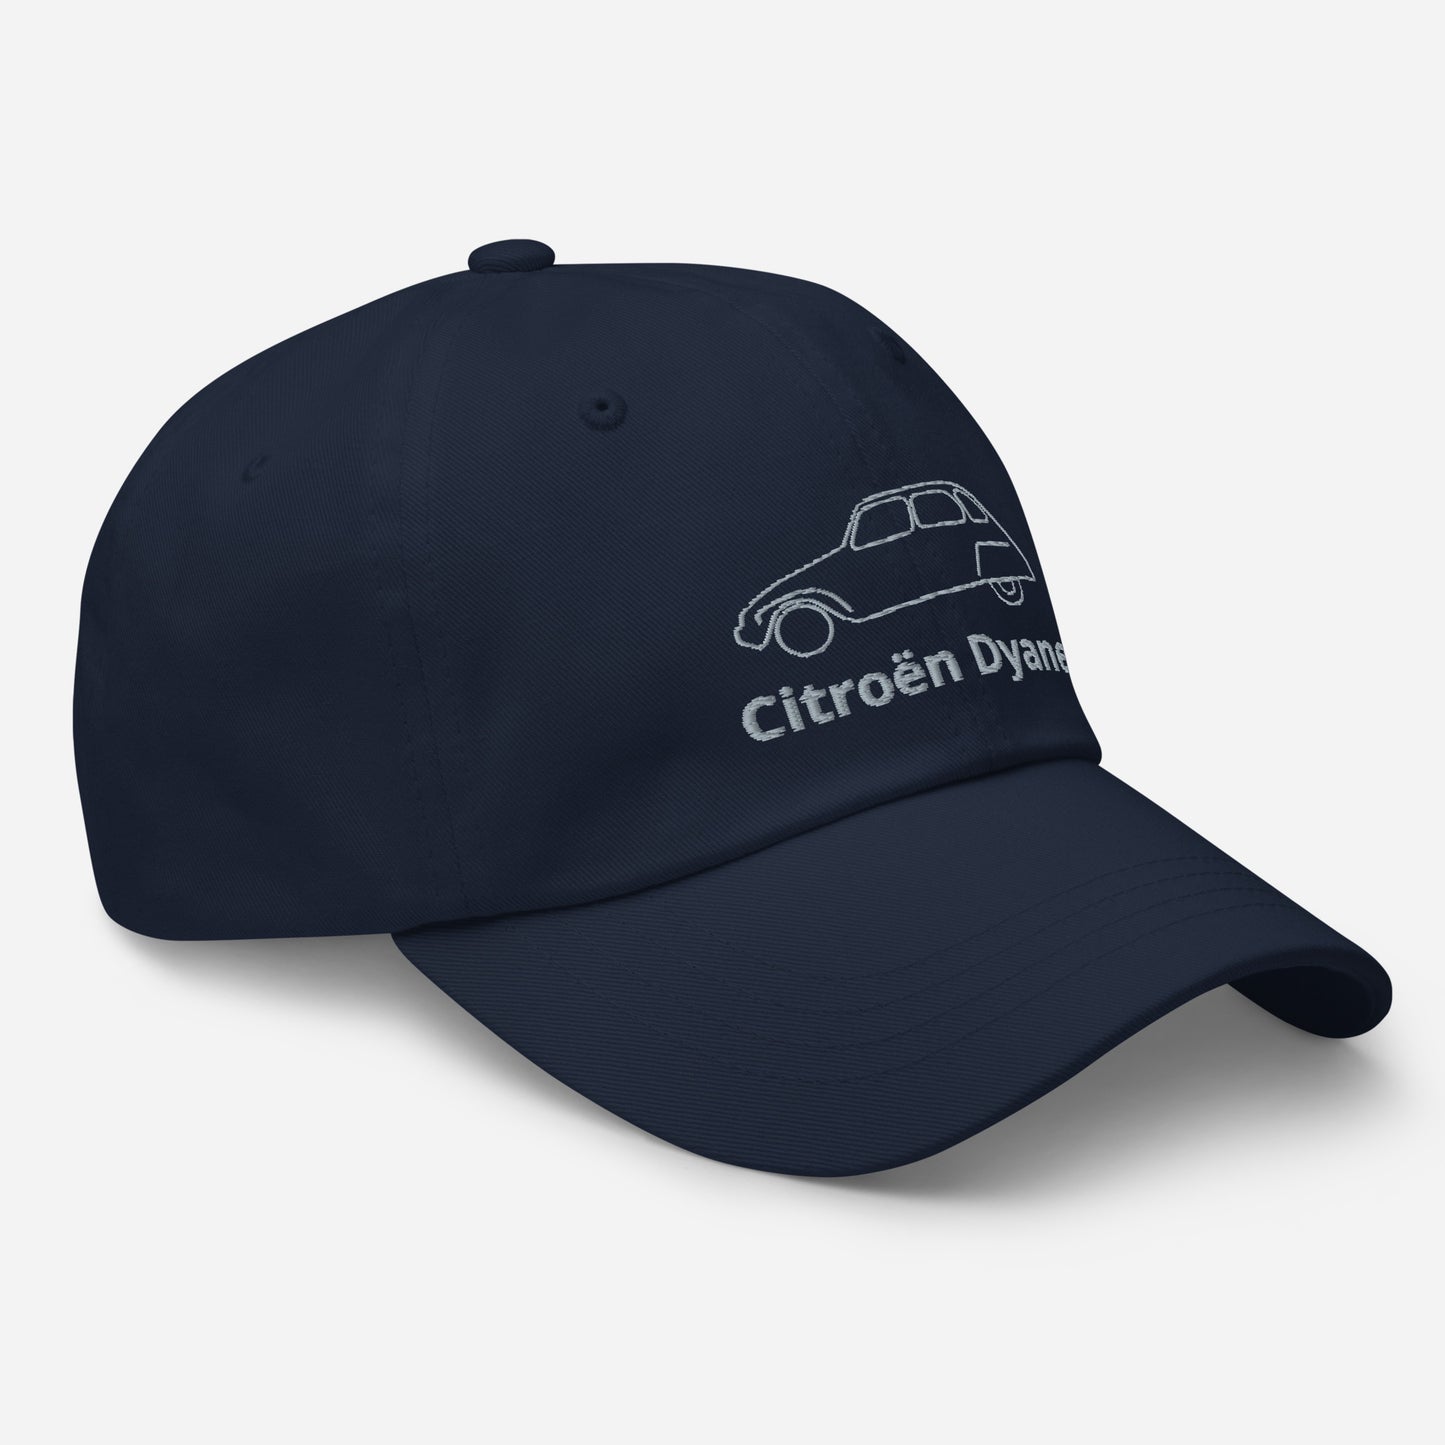 Dessin au trait casquette Citroën Dyane brodé - Noir, Marine, Rouge, Gris, L.Bleu ou Blanc